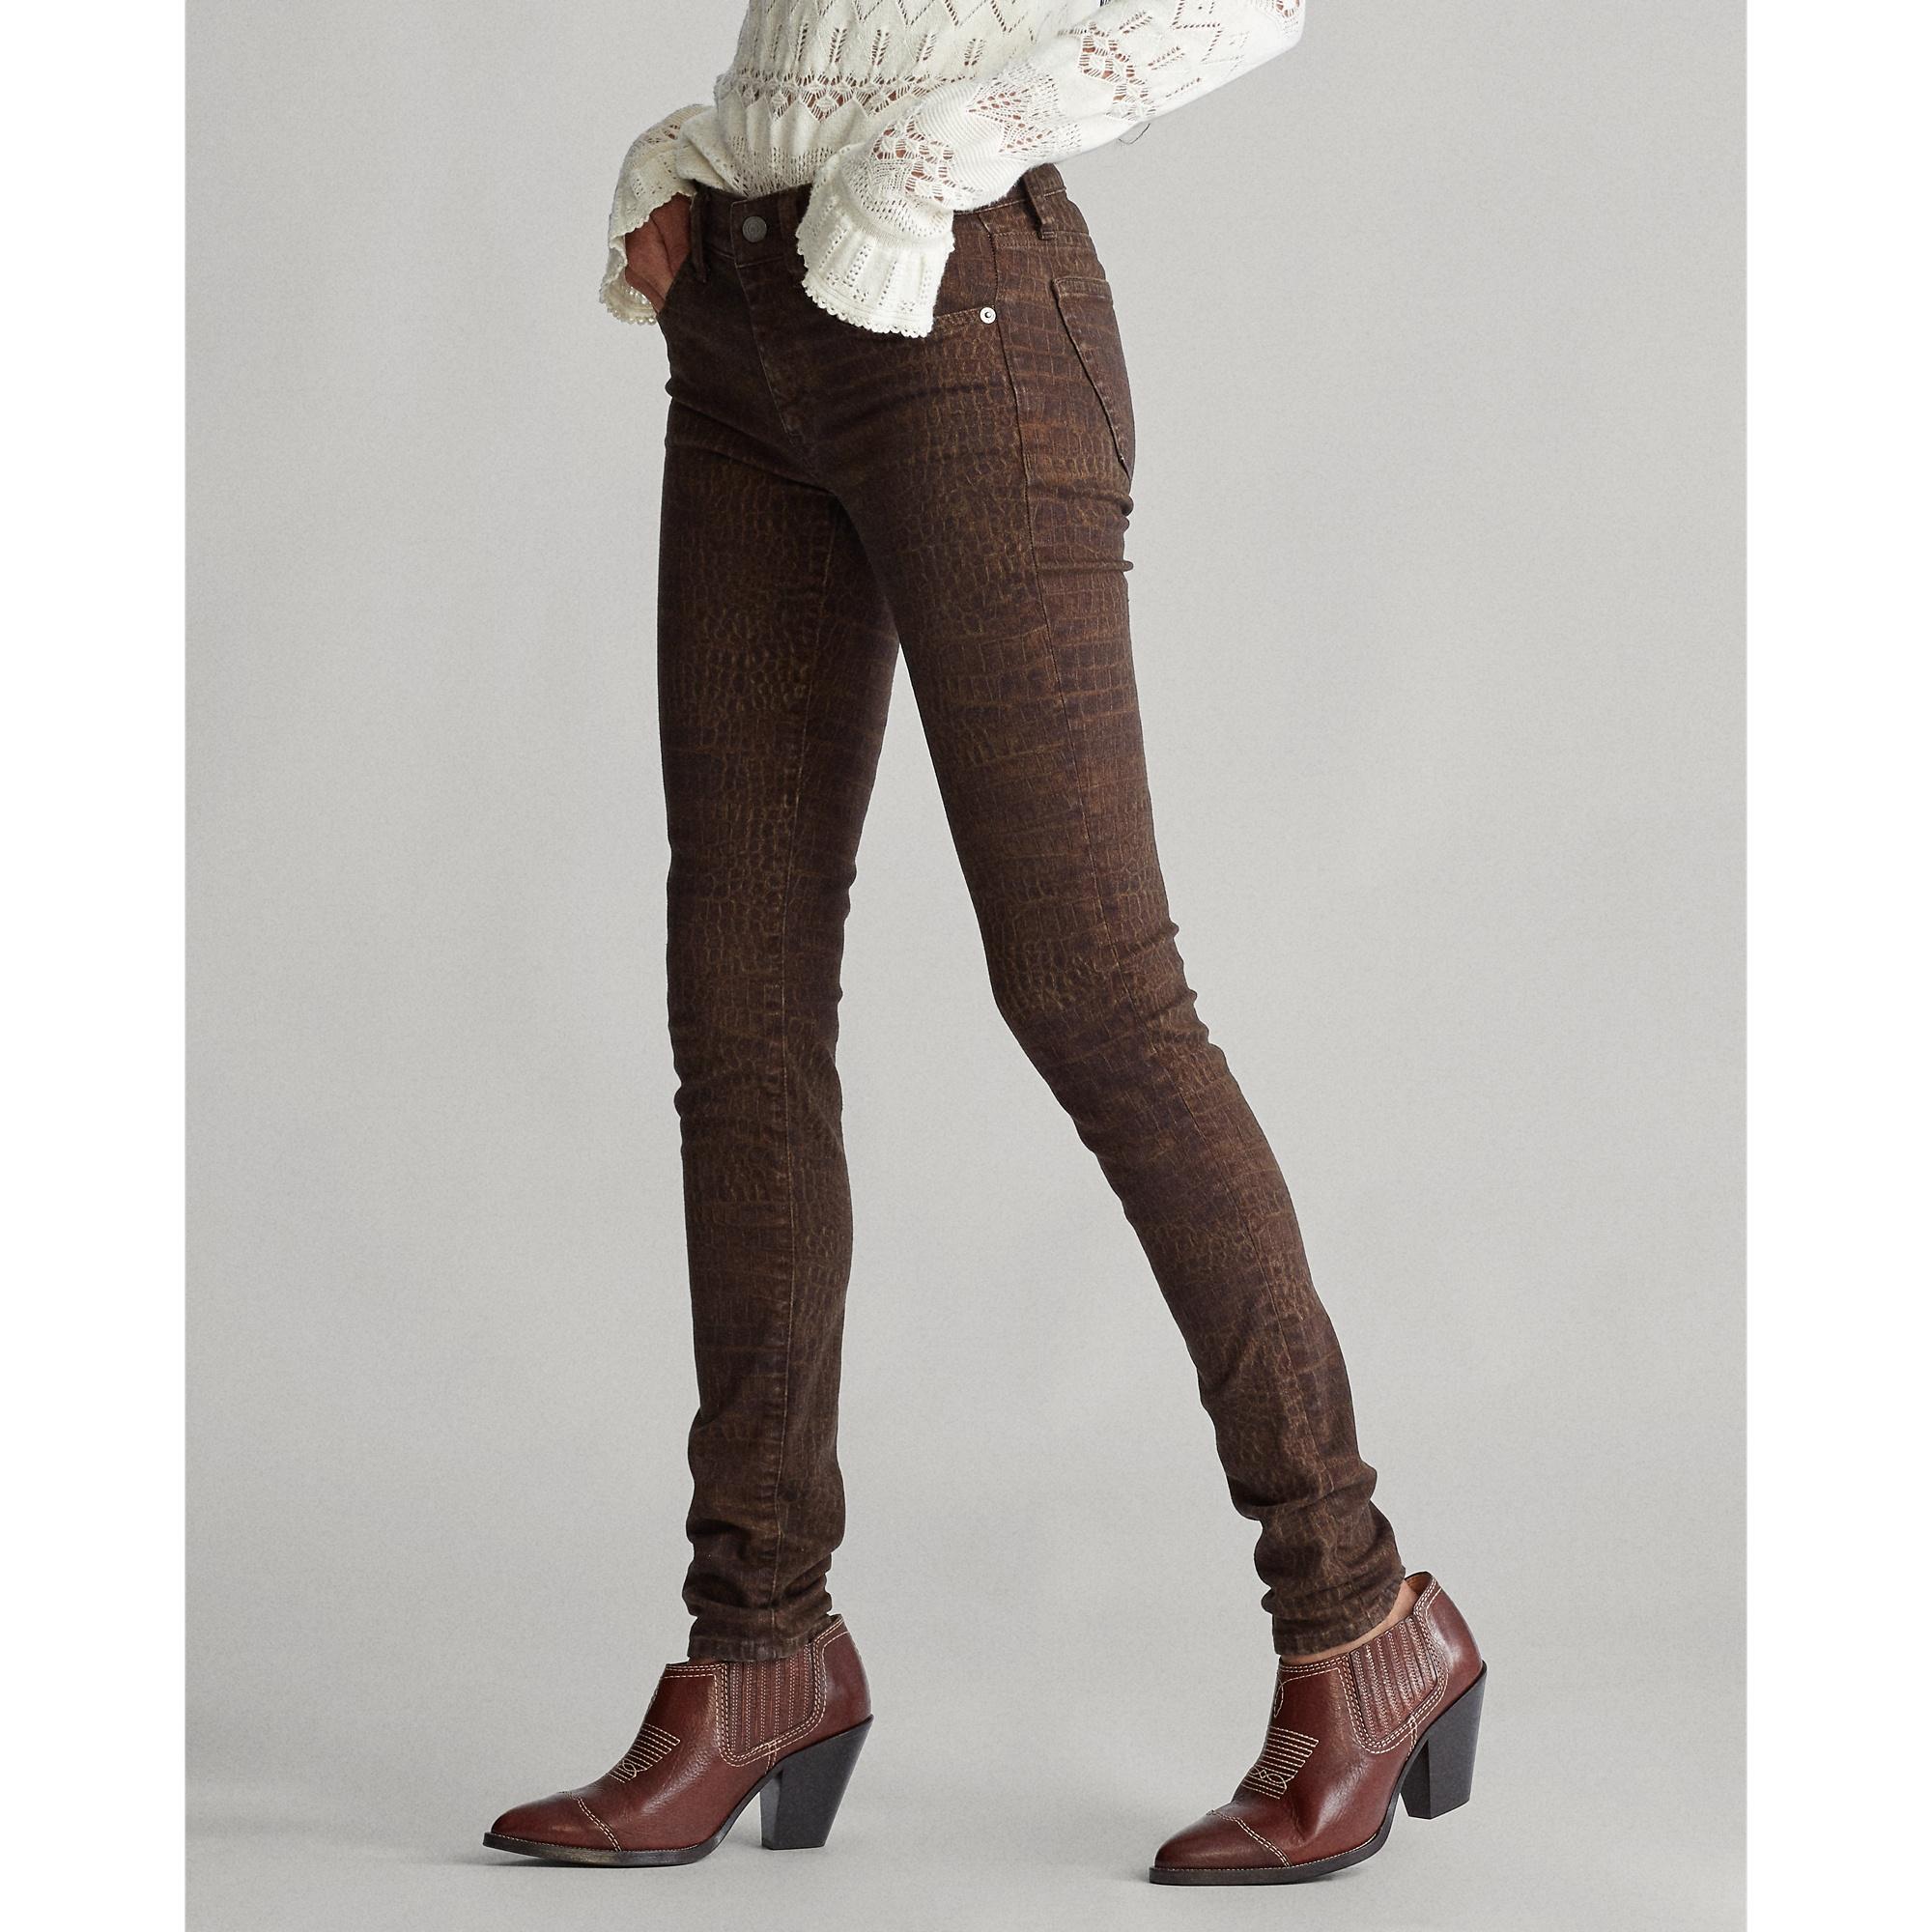 Ralph Lauren Denim Tompkins Skinny Jean in Croc Print (Brown) - Lyst